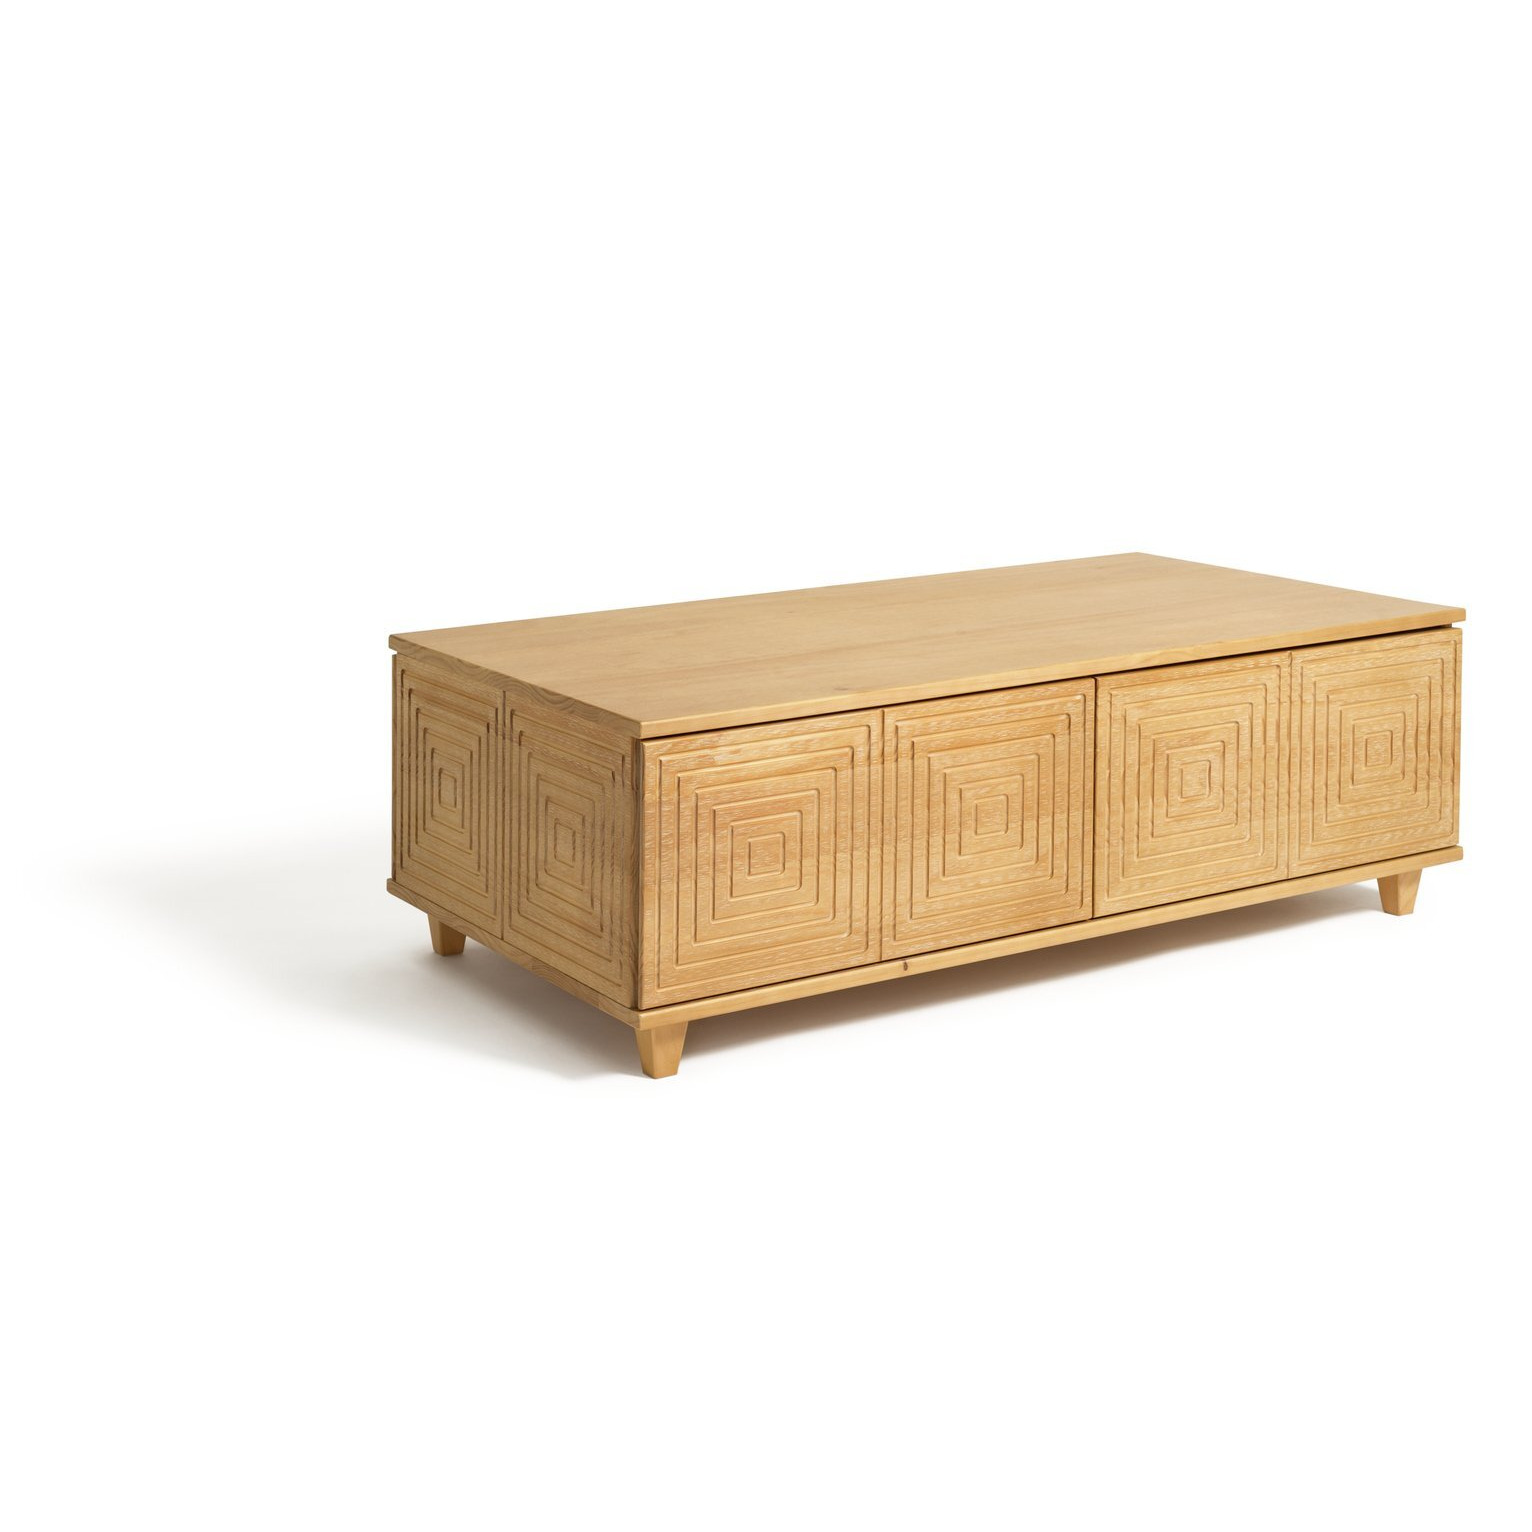 Habitat Grooved Storage Coffee Table - Pine - image 1